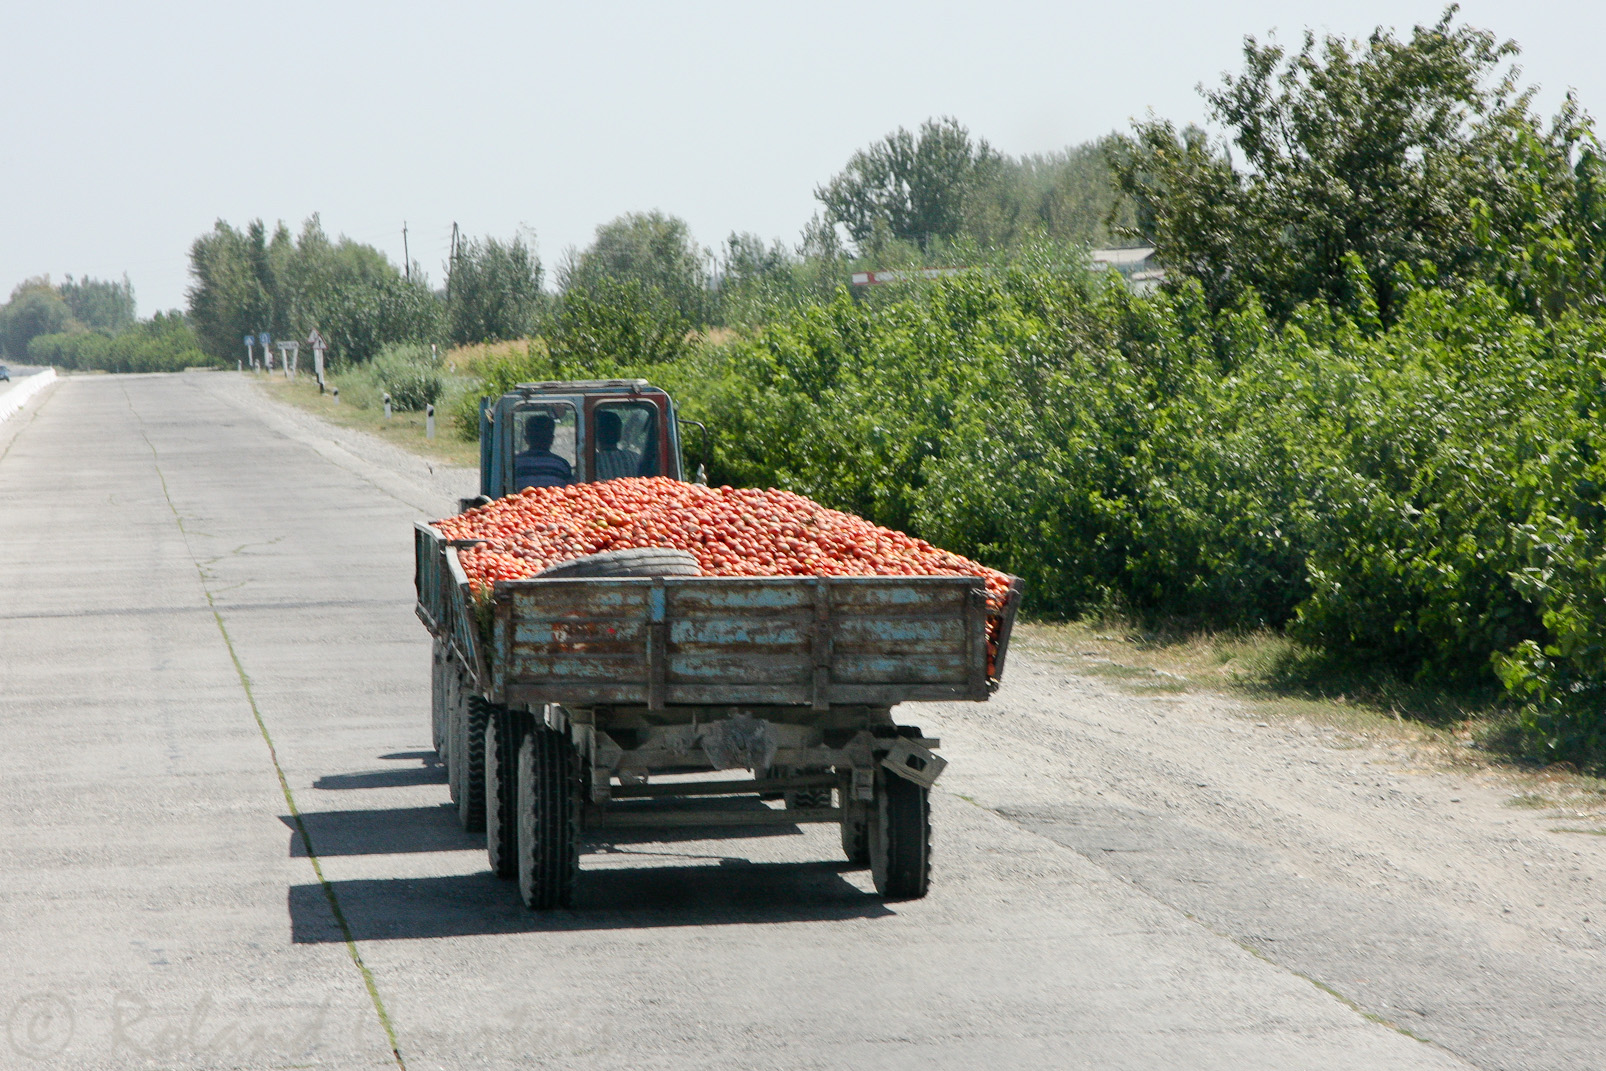 Transport de tomates vers le marché.